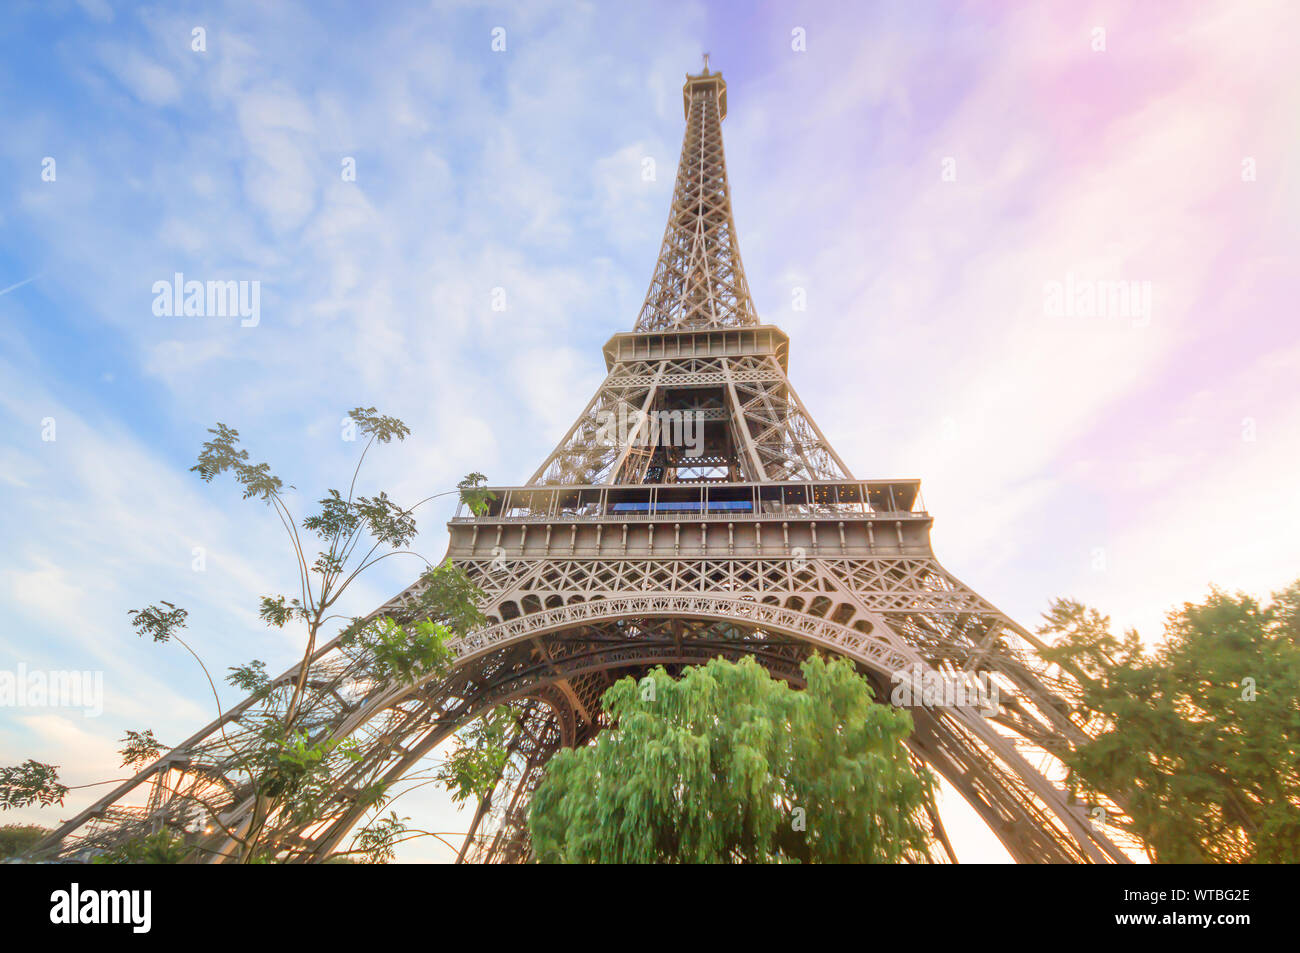 Schöne Landschaft im Sommer Eiffelturm Paris, Frankreich unter dem Sonnenuntergang Himmel, Eiffelturm die romantischste touristische Attraktion und das Symbol der Gleichheit Stockfoto